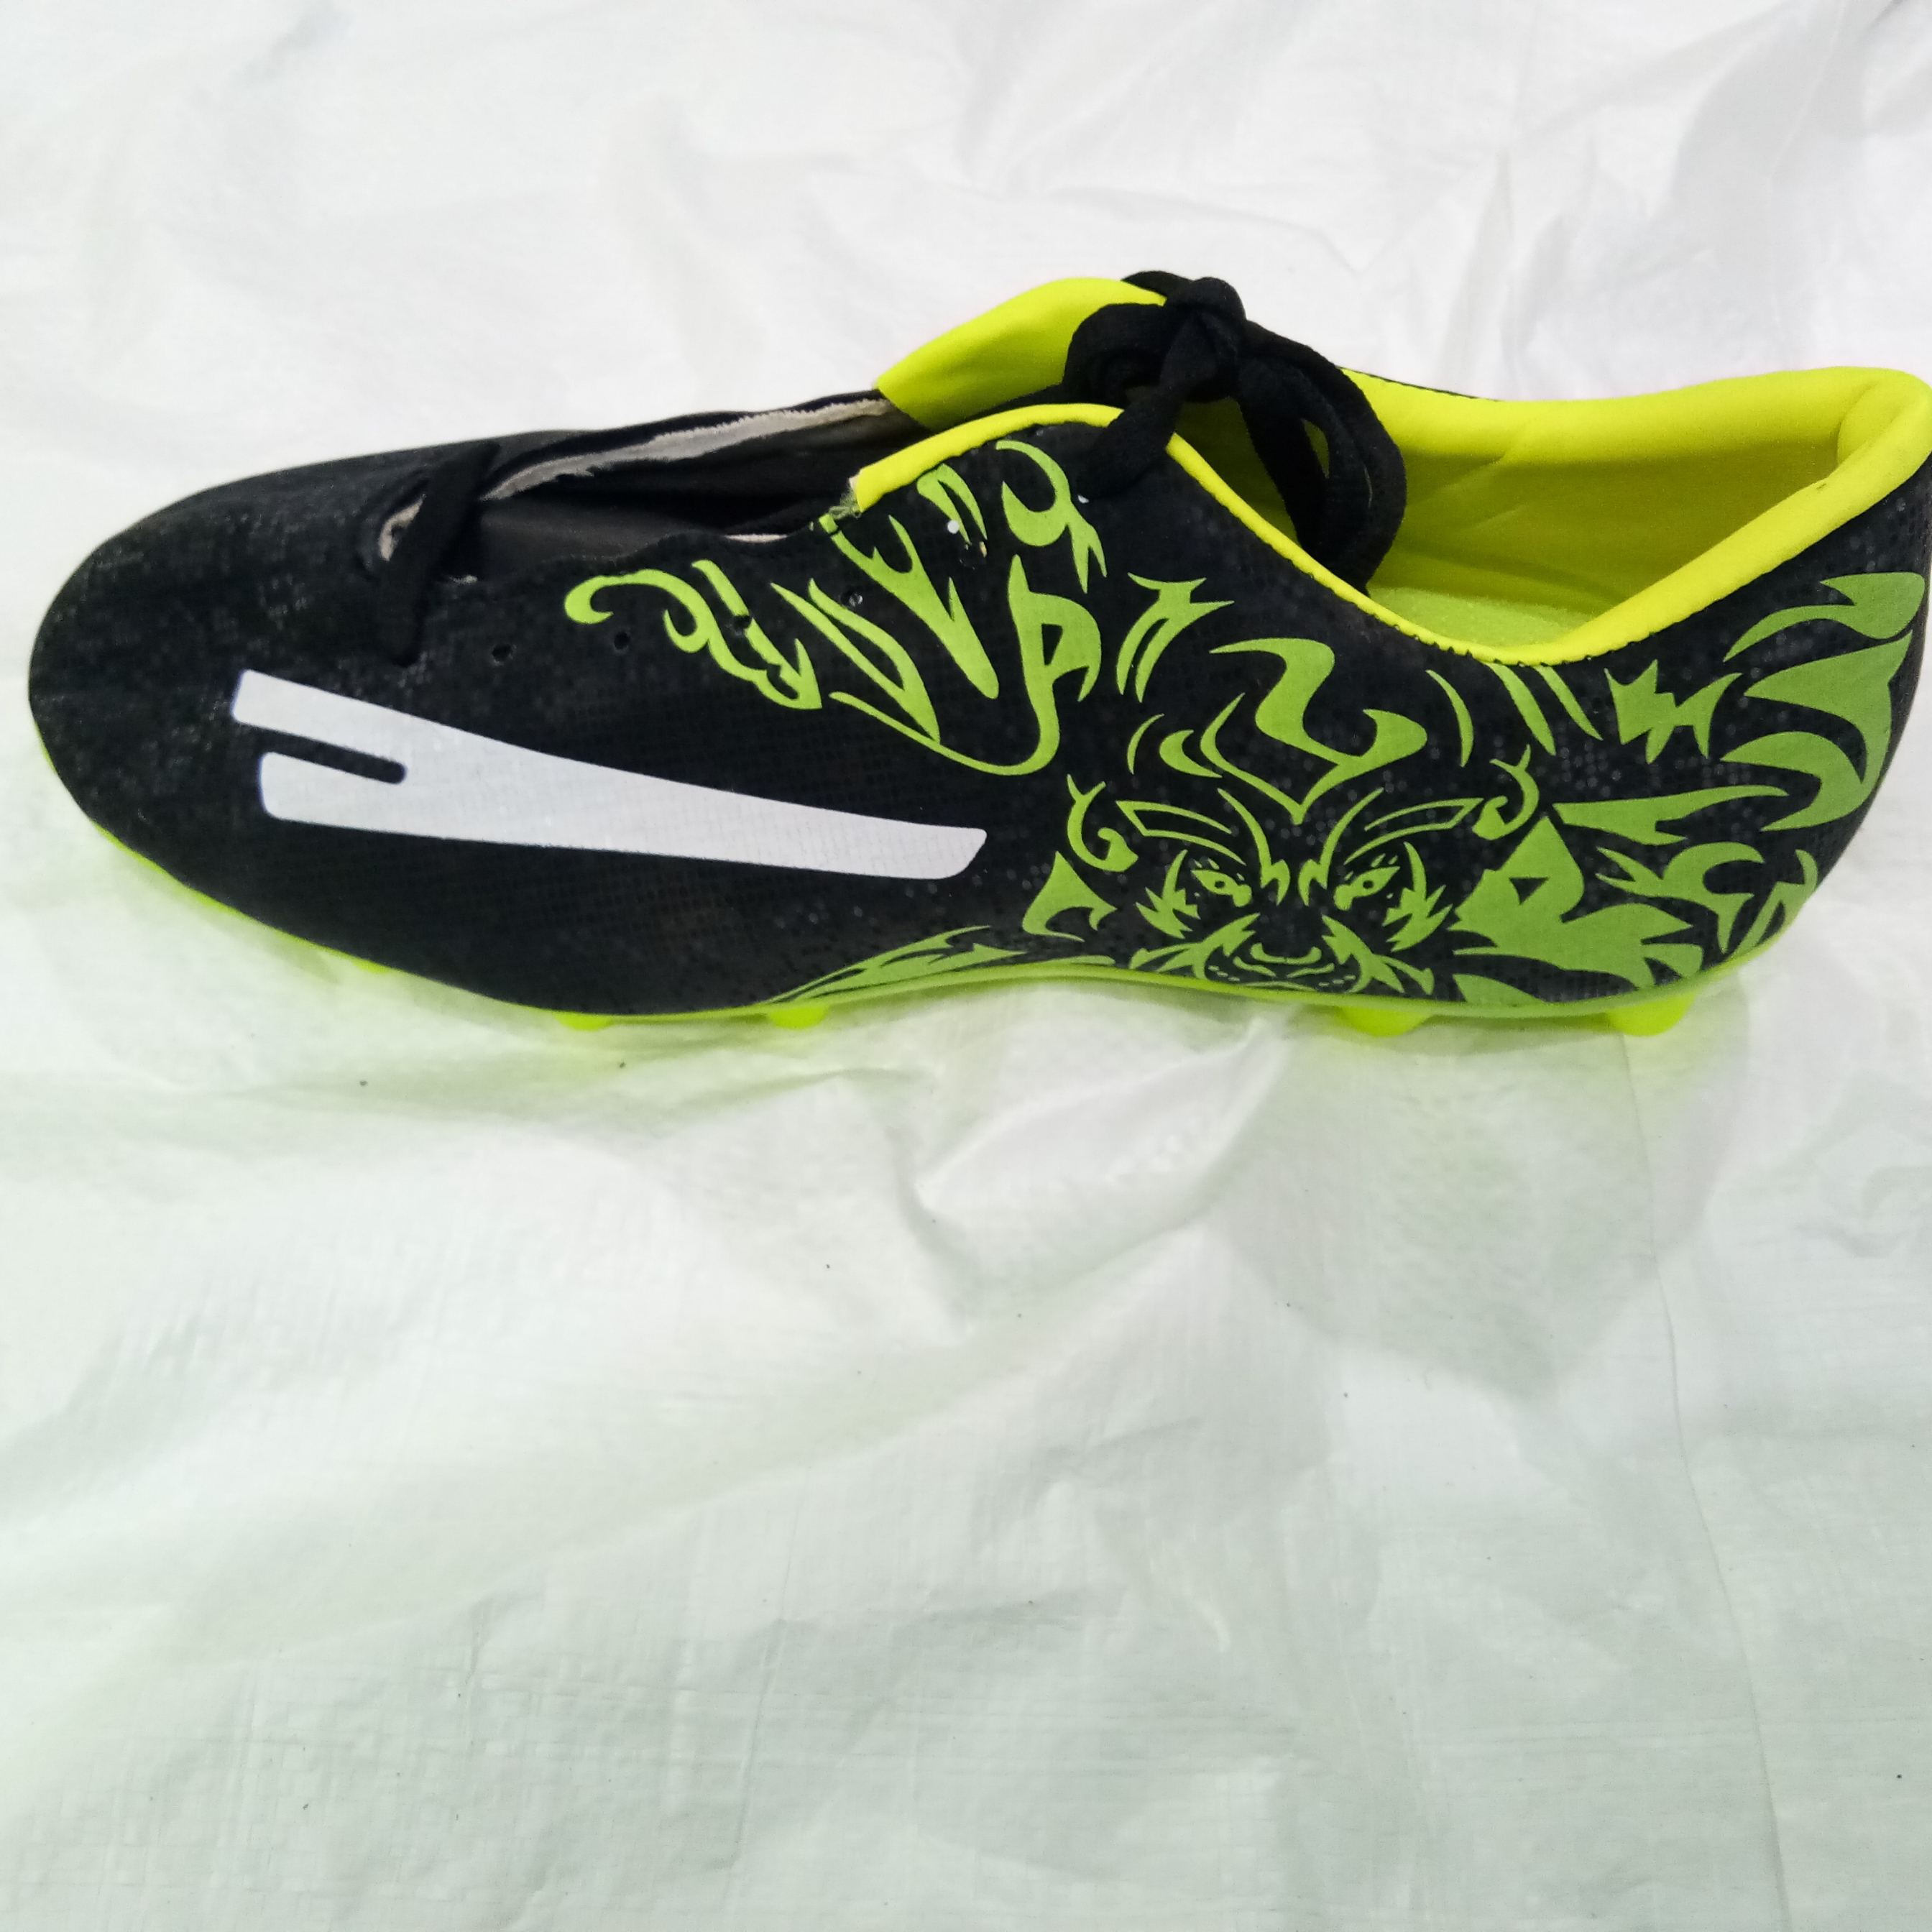 Buy SEGA glaze football shoes original 